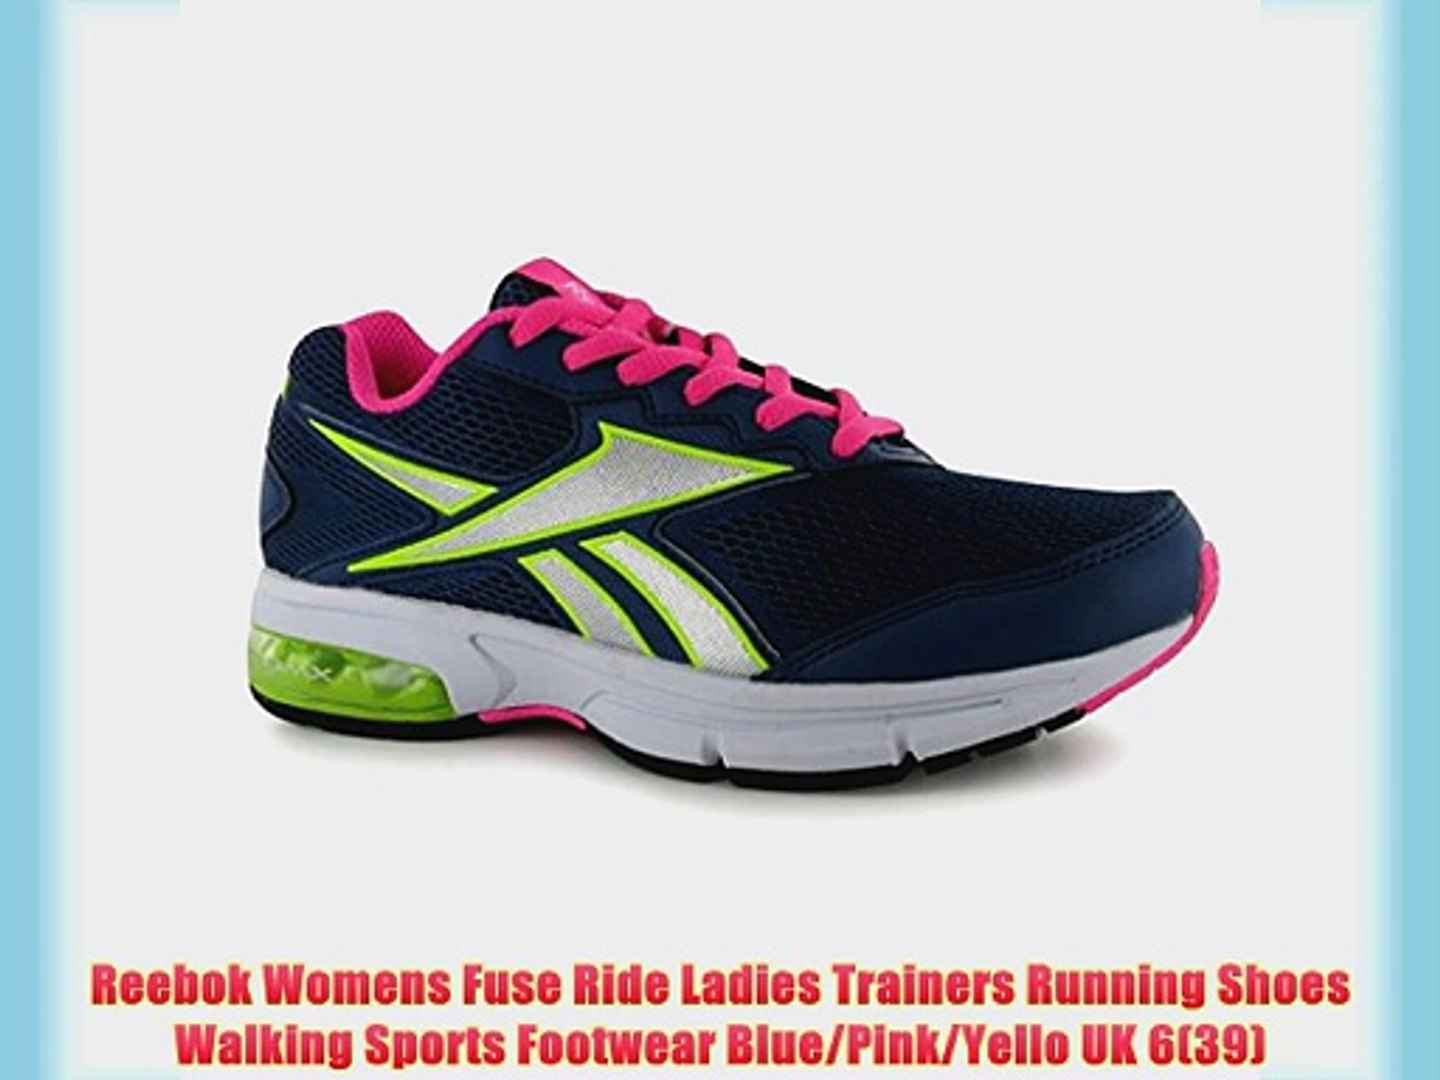 walking reebok trainers womens